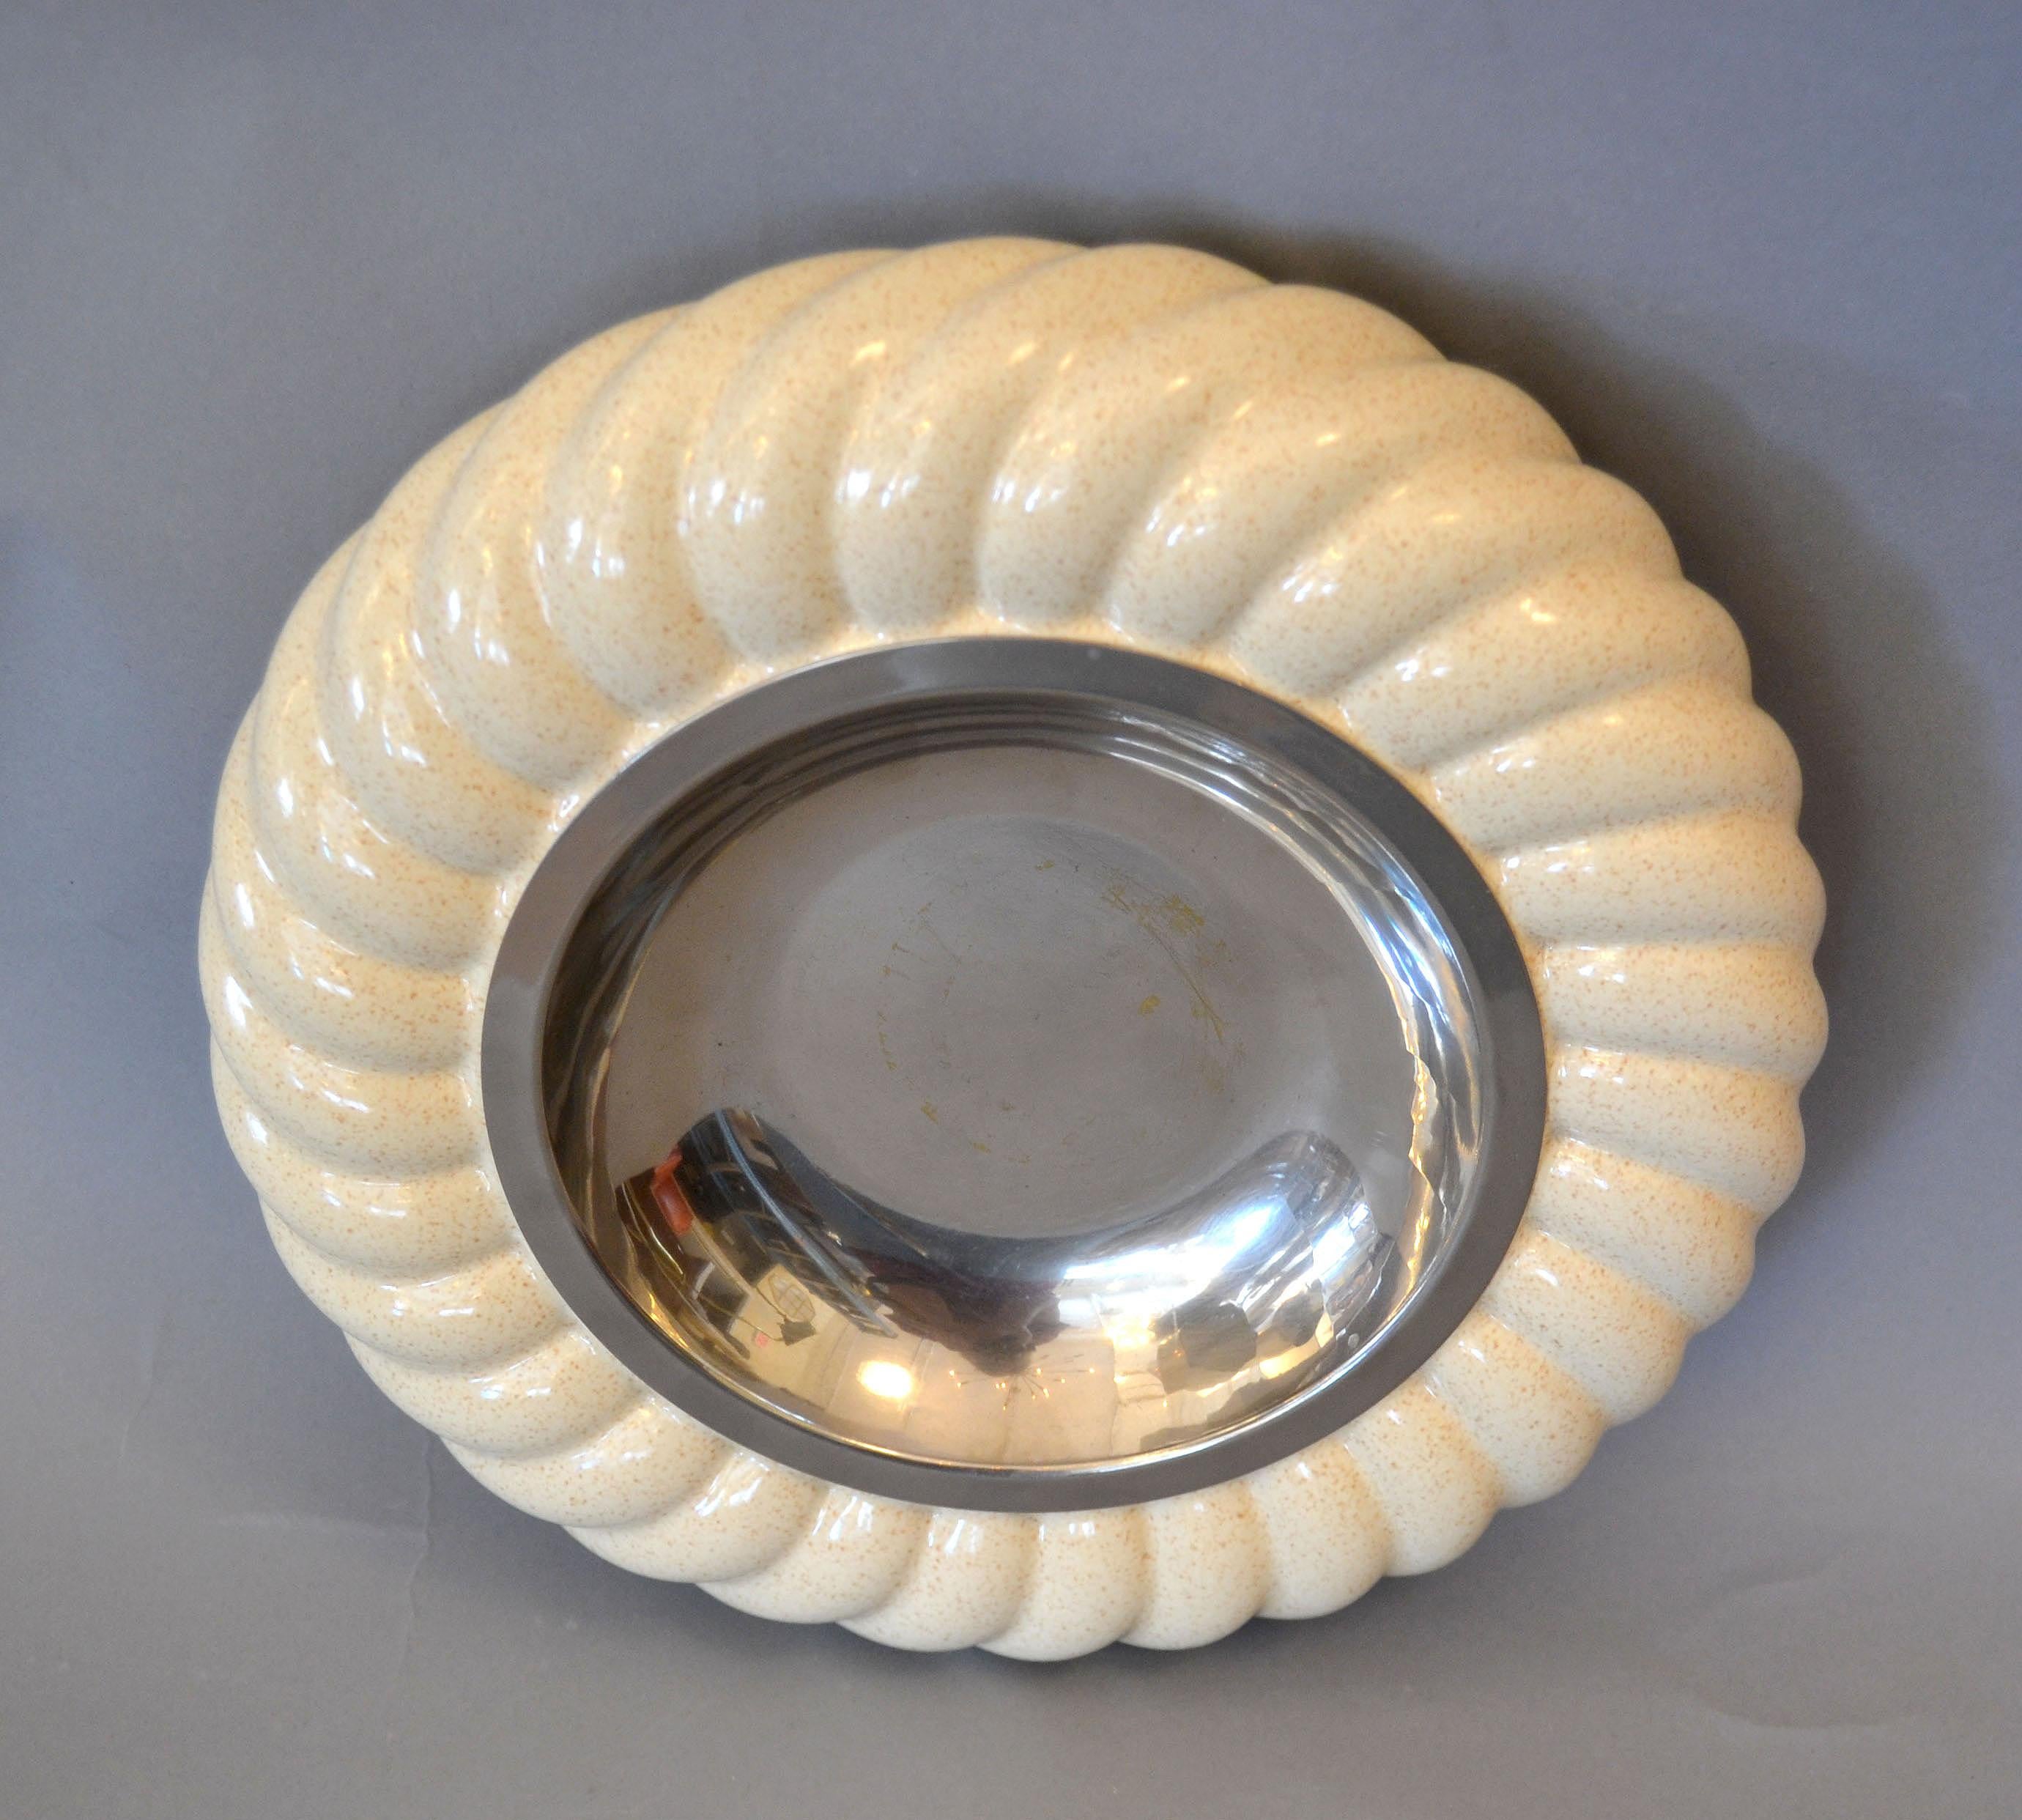 Mid-20th Century Mid-Century Modern Tommaso Barbi Ceramic & Chrome Ashtray, Decorative Bowl Italy